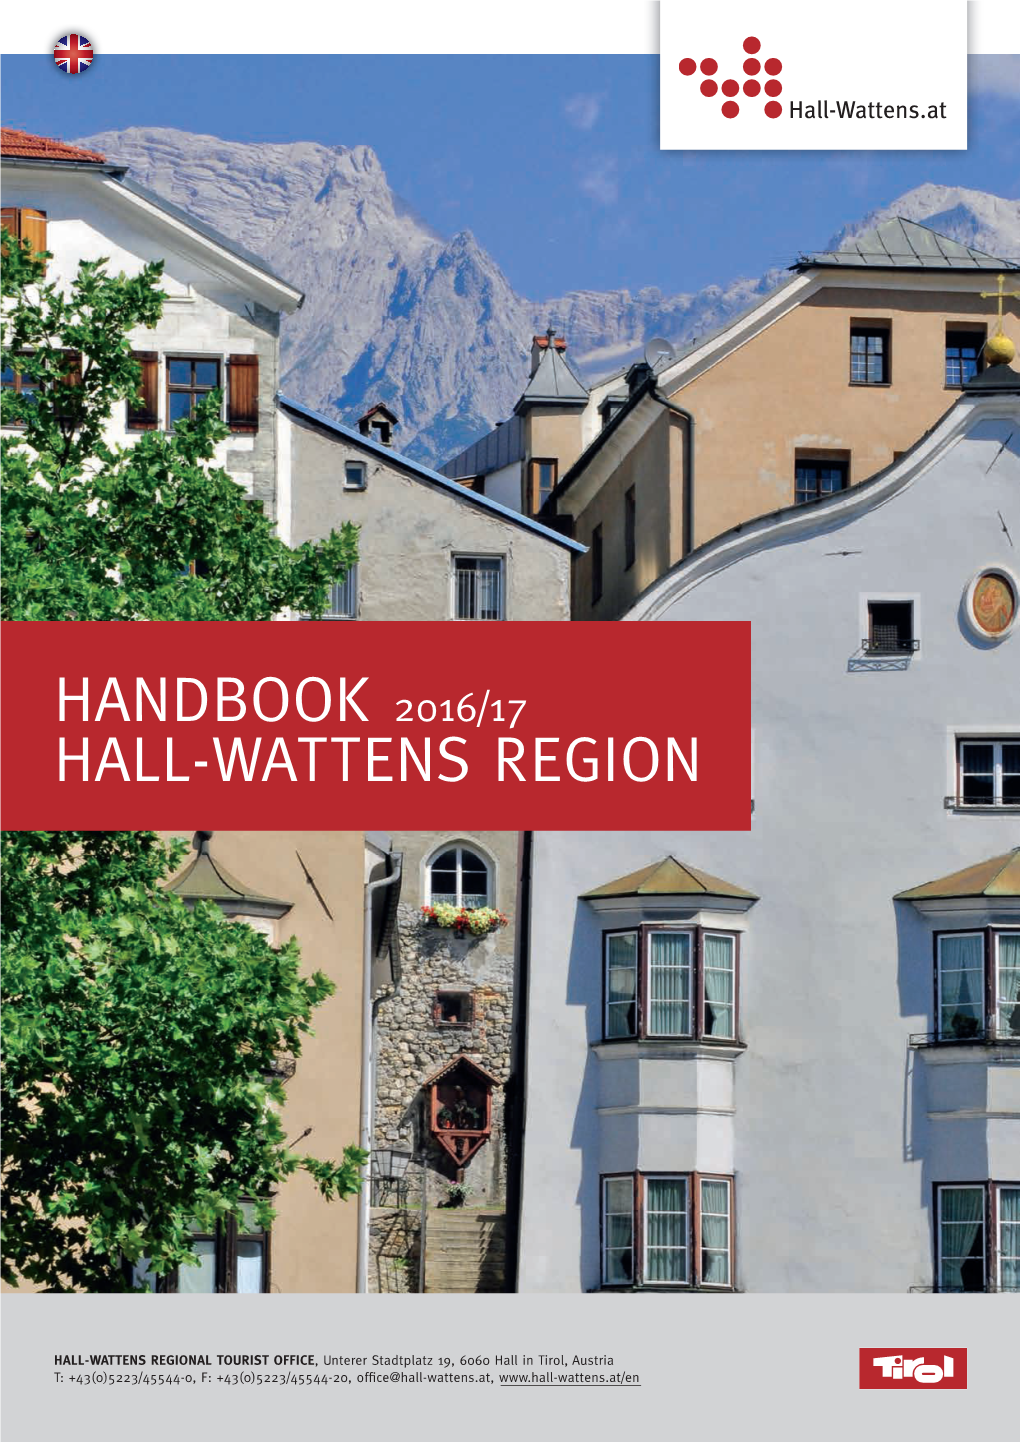 Handbook 2016/17 Hall-Wattens Region